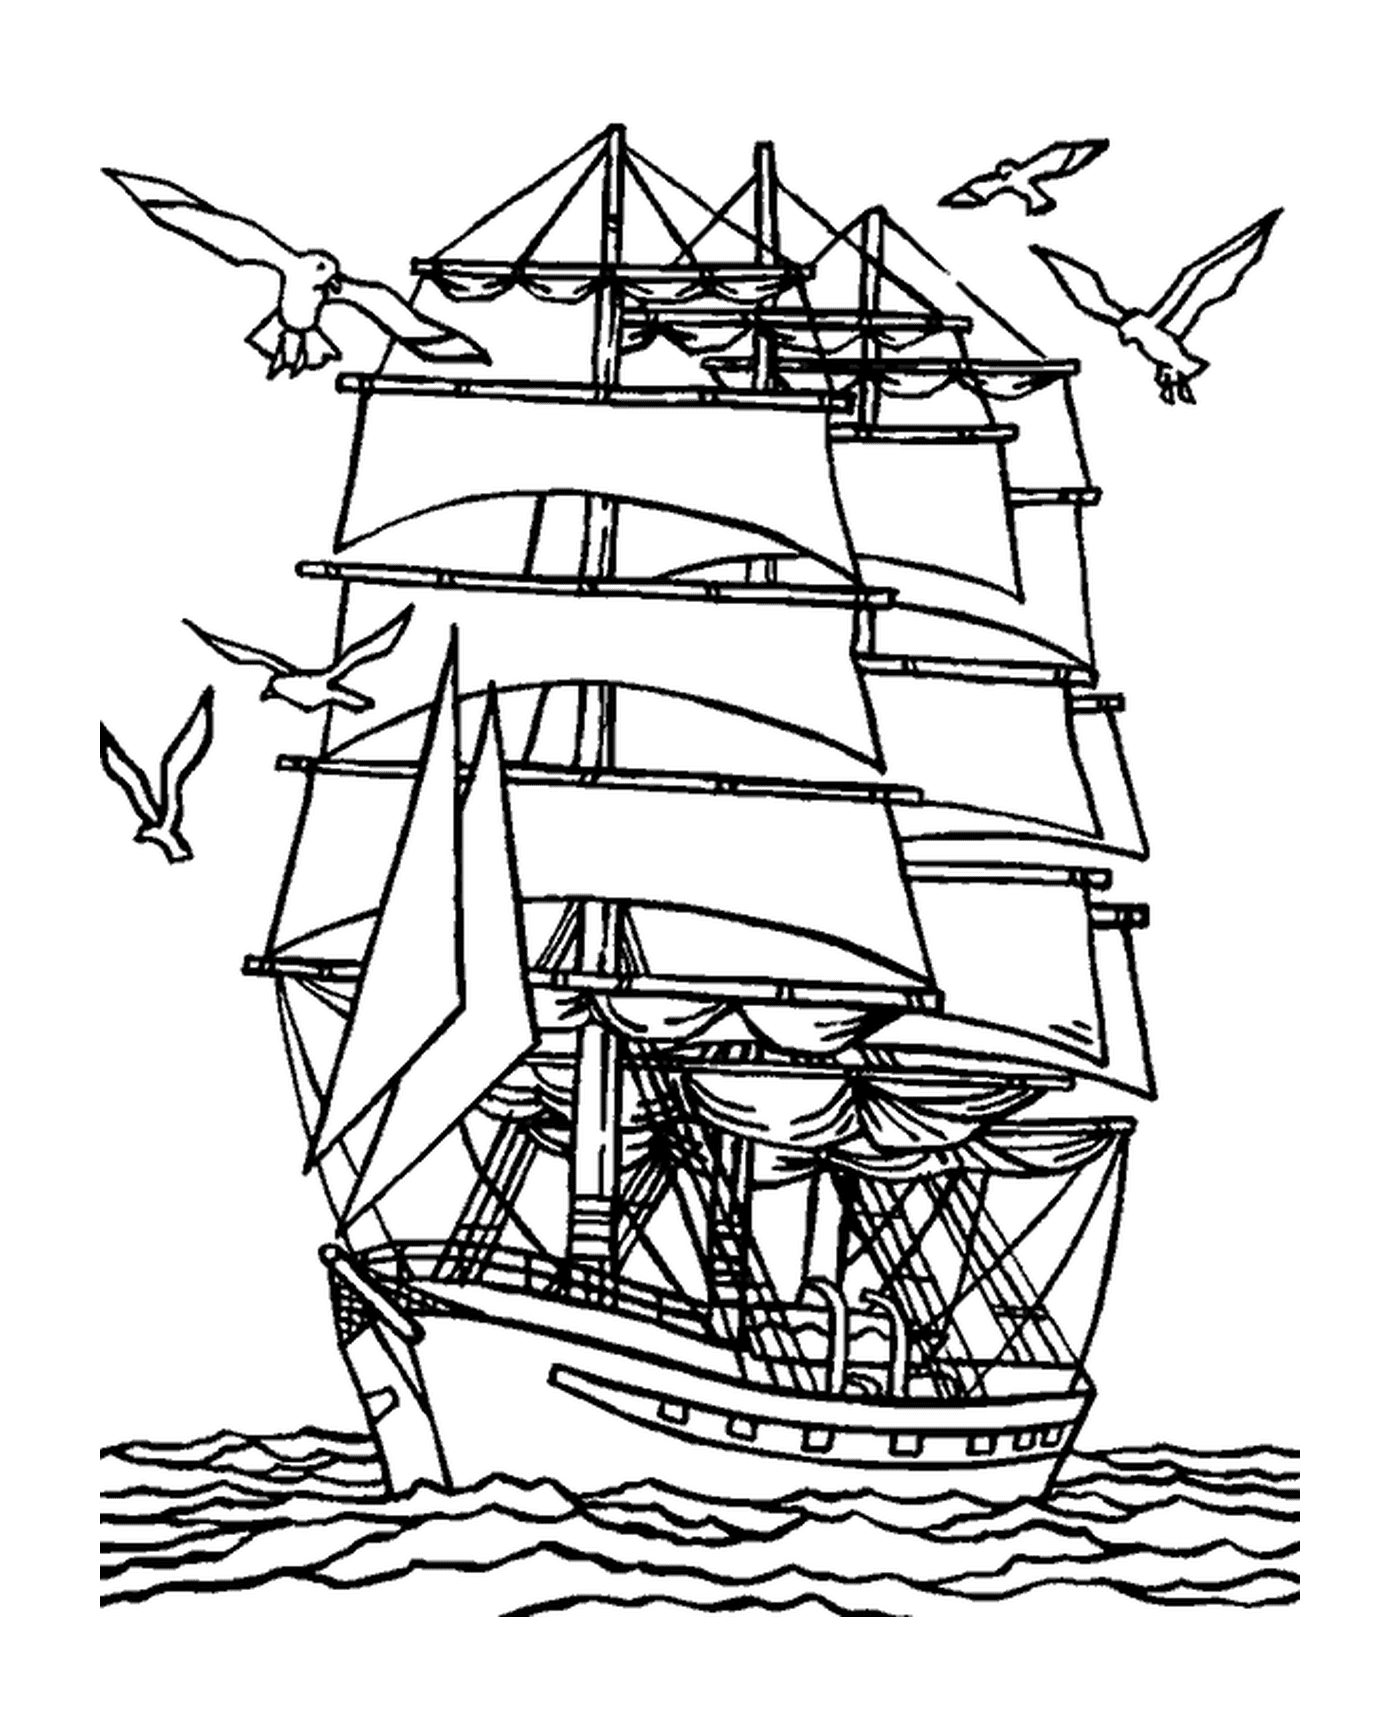  Ein Schiff nahe der Küste mit Möwen 